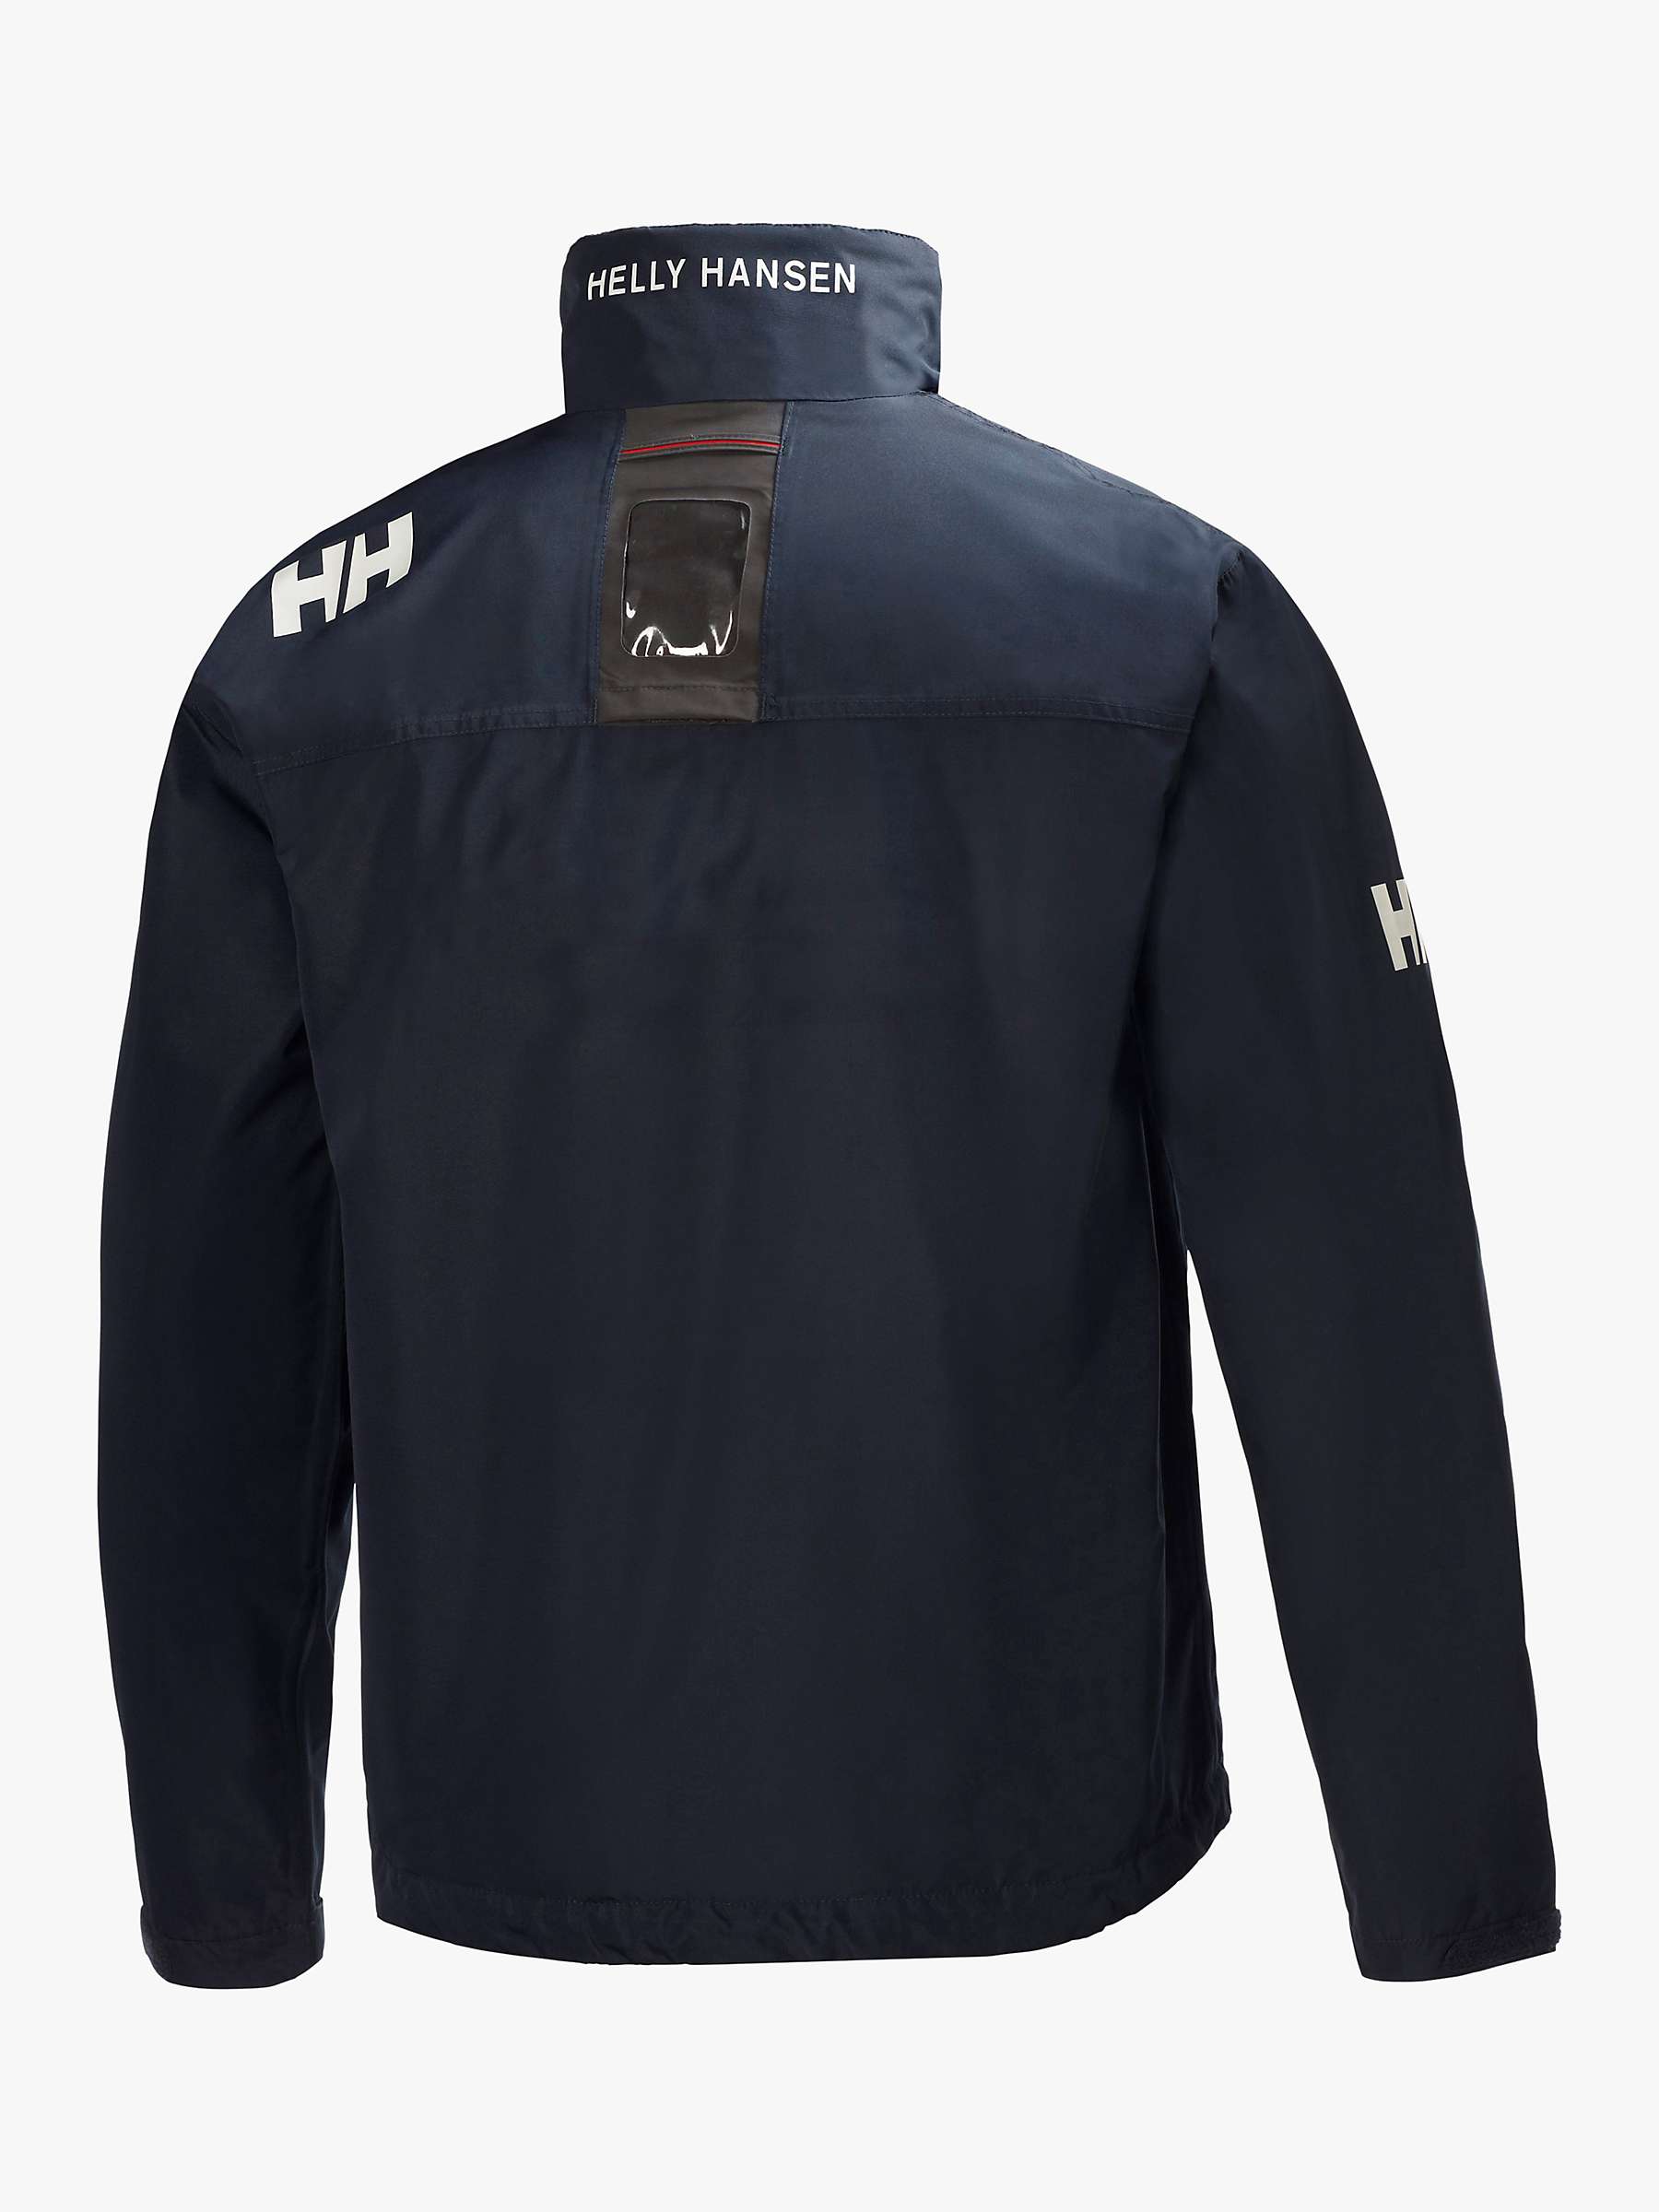 Buy Helly Hansen Crew Midlayer Men's Jacket, Navy Online at johnlewis.com